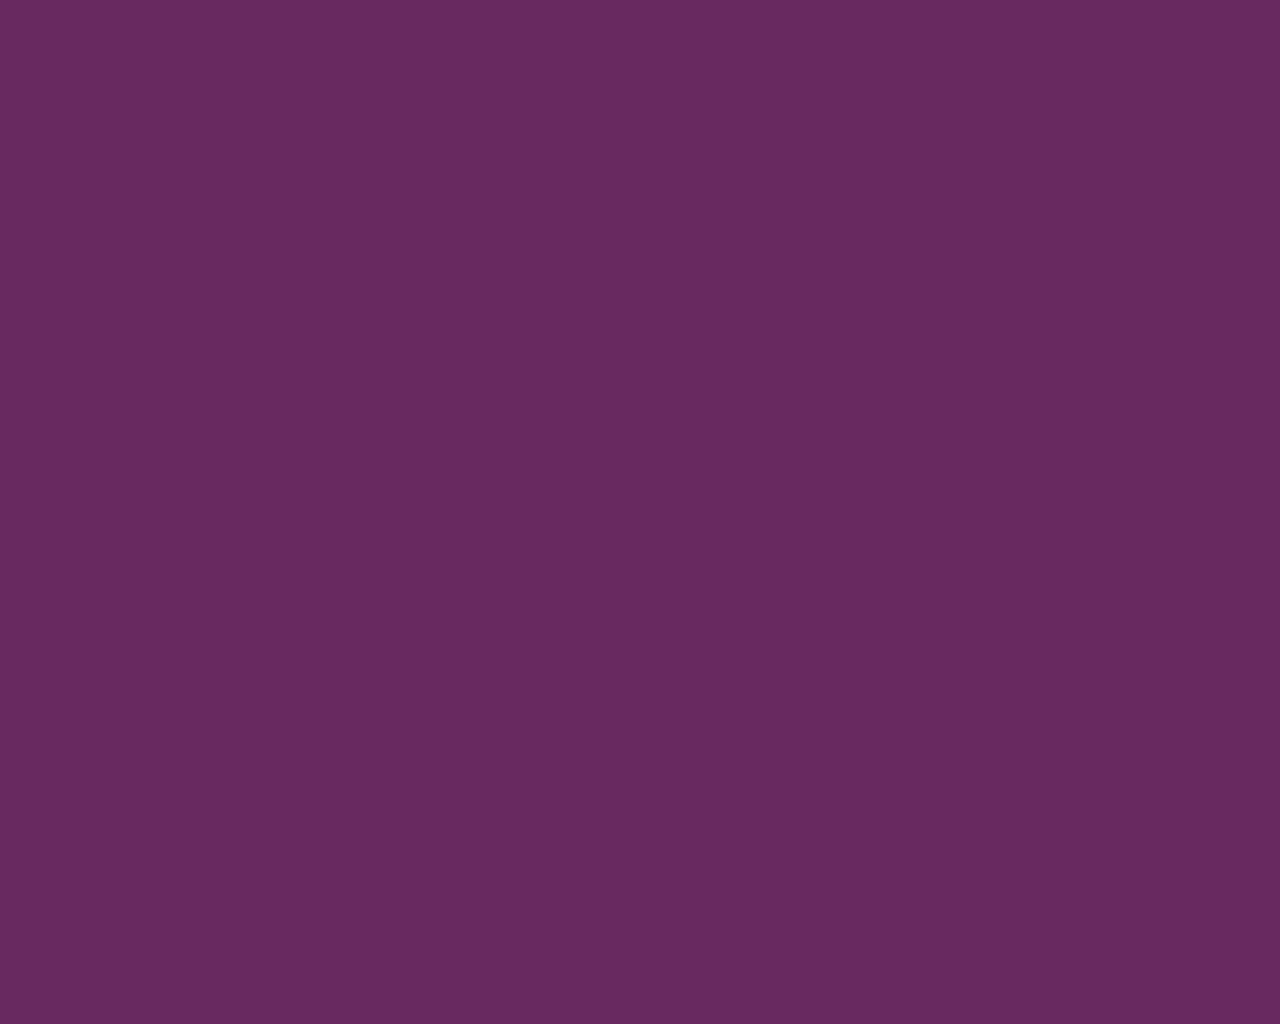  Purple Backgrounds Purple color wallpapers purple solid color